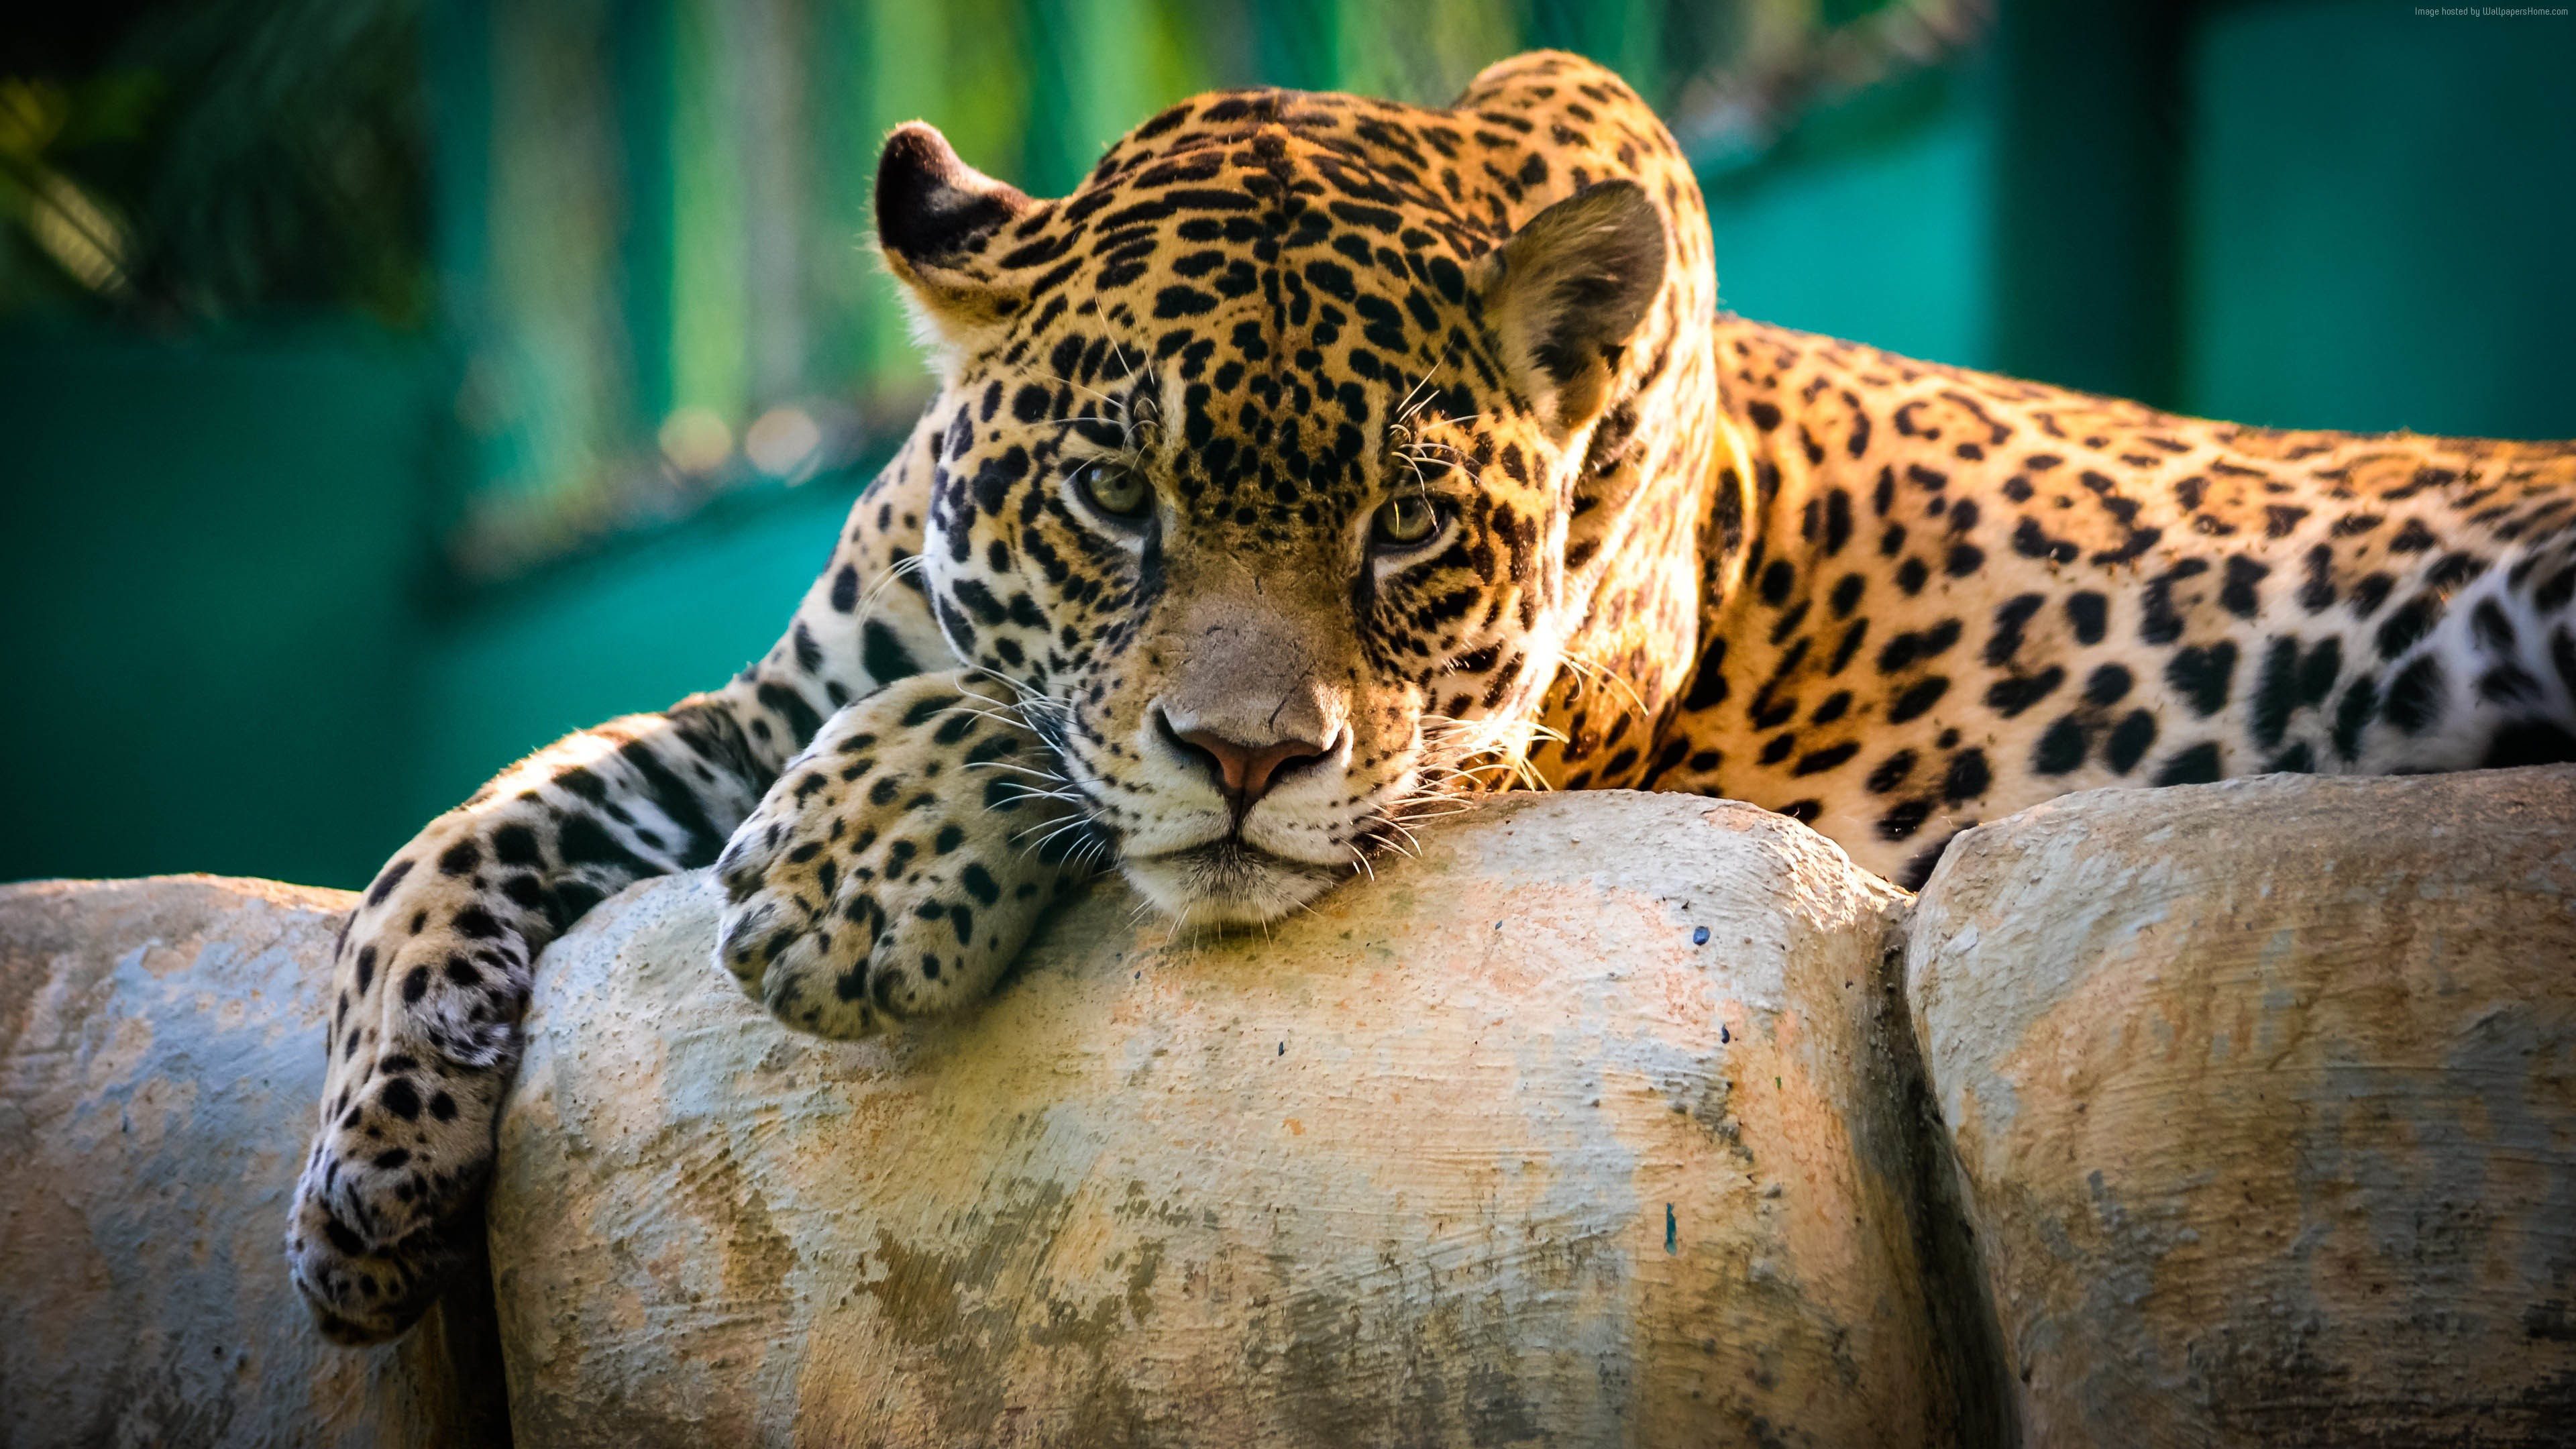 3840x2160 Cool wallpaper images about Wallpaper Beautiful Jaguar Animal Predator